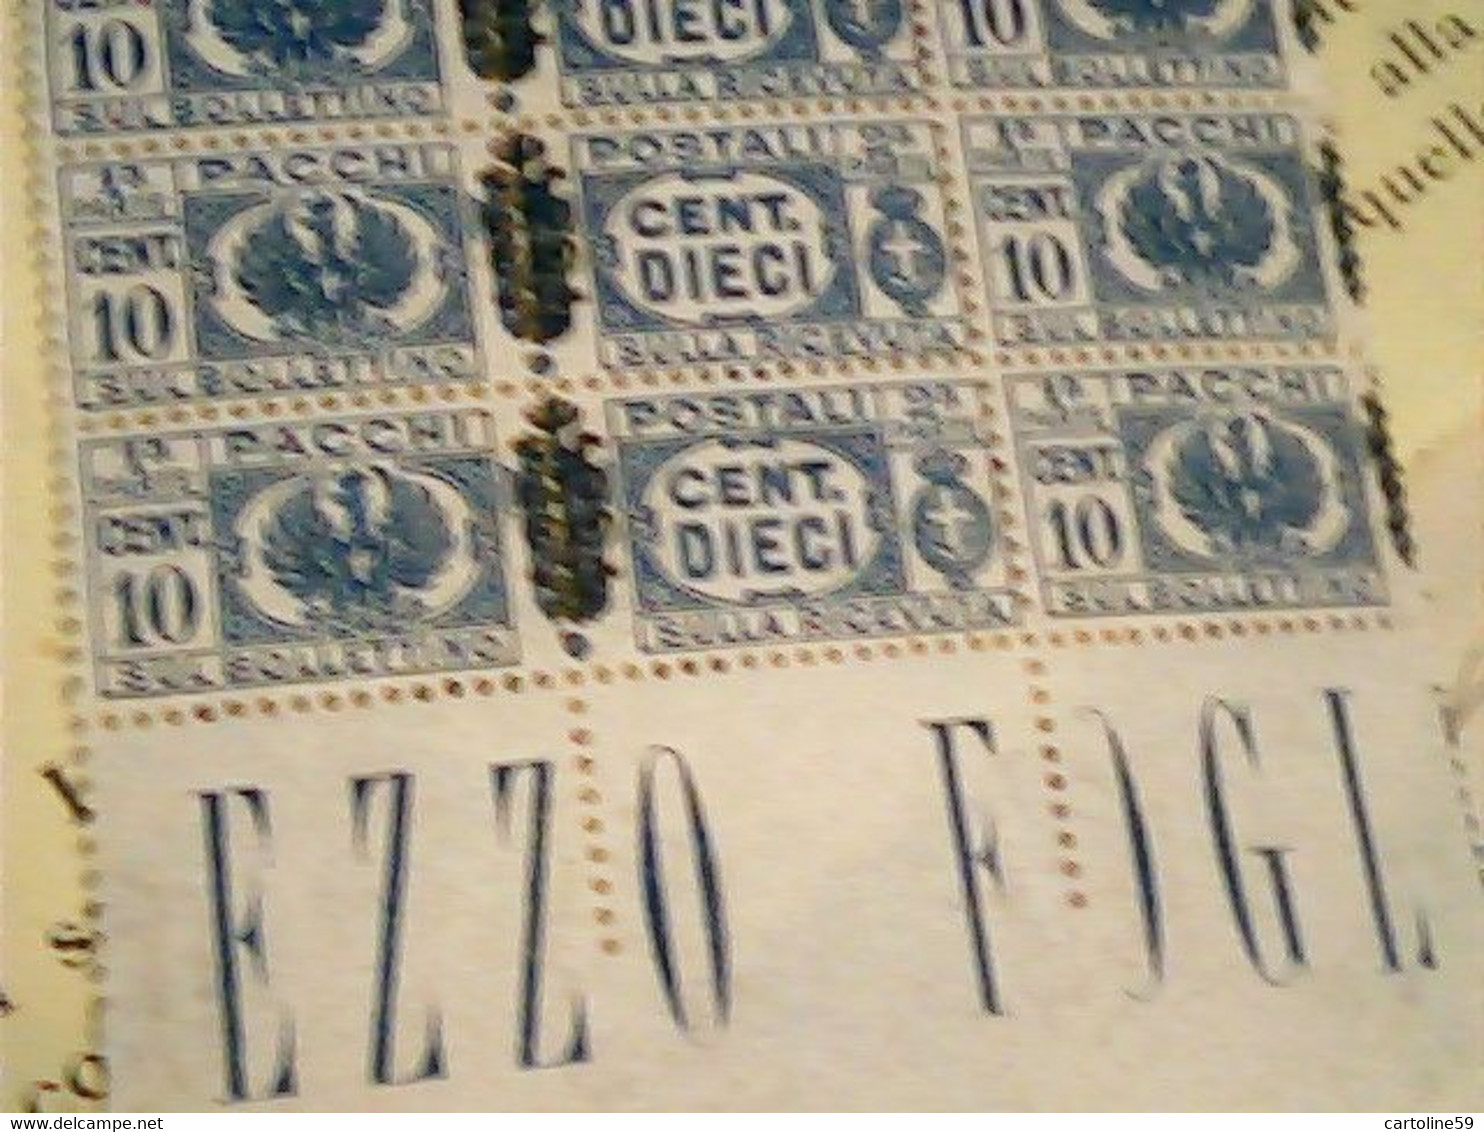 Luogotenenza 1945, Pacchi Postali Cent. 10 Azzurro - Blocco STRISCIA Di 10 Valori Nuovi  E 10 PARTE  BOLLETTINO IM4395 - Colis-postaux